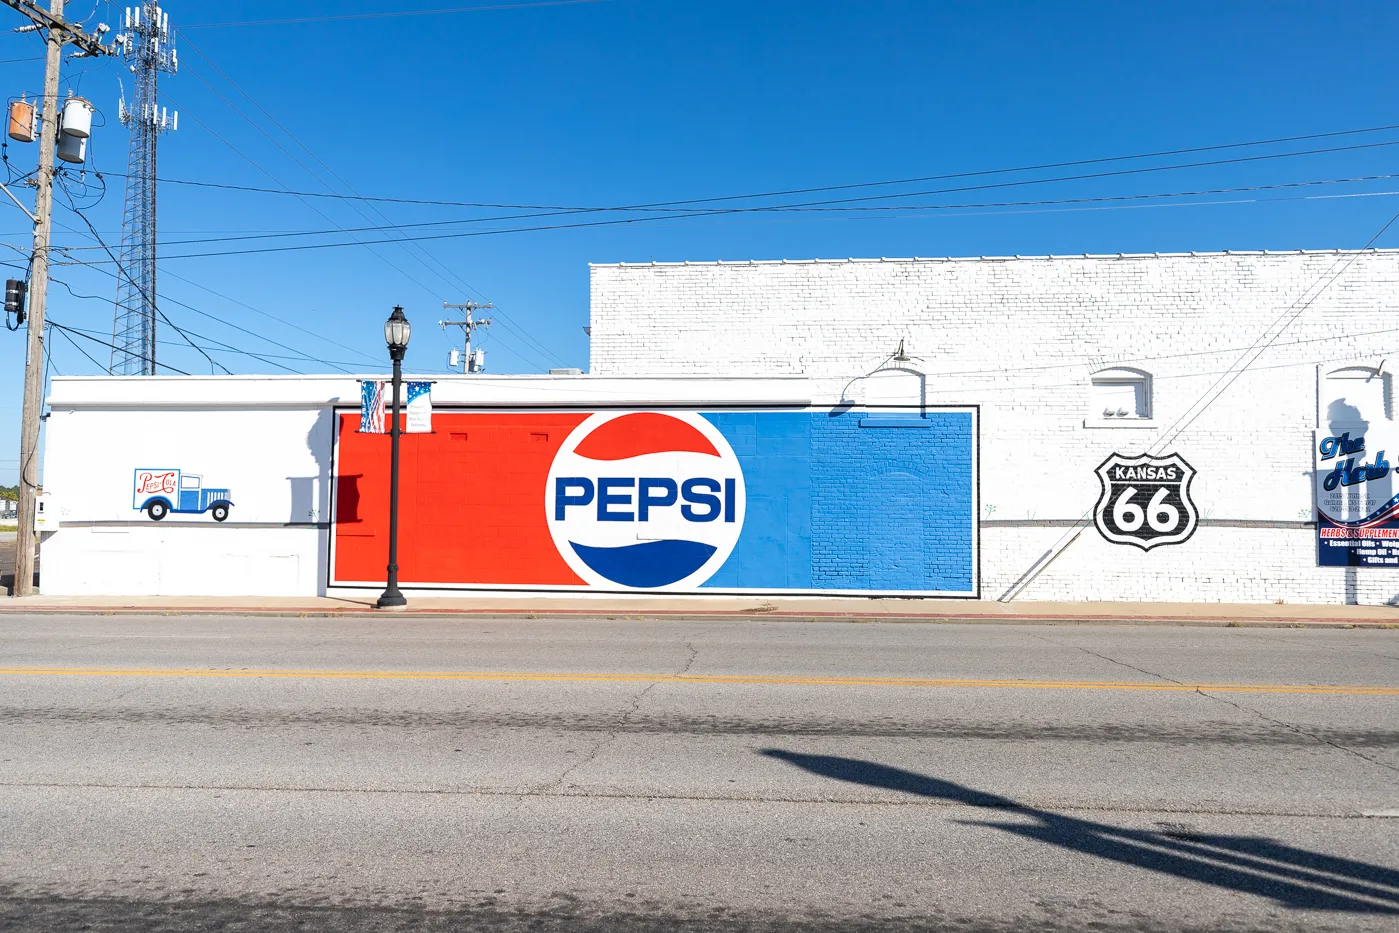 Pepsi Route 66 mural in Galena, Kansas